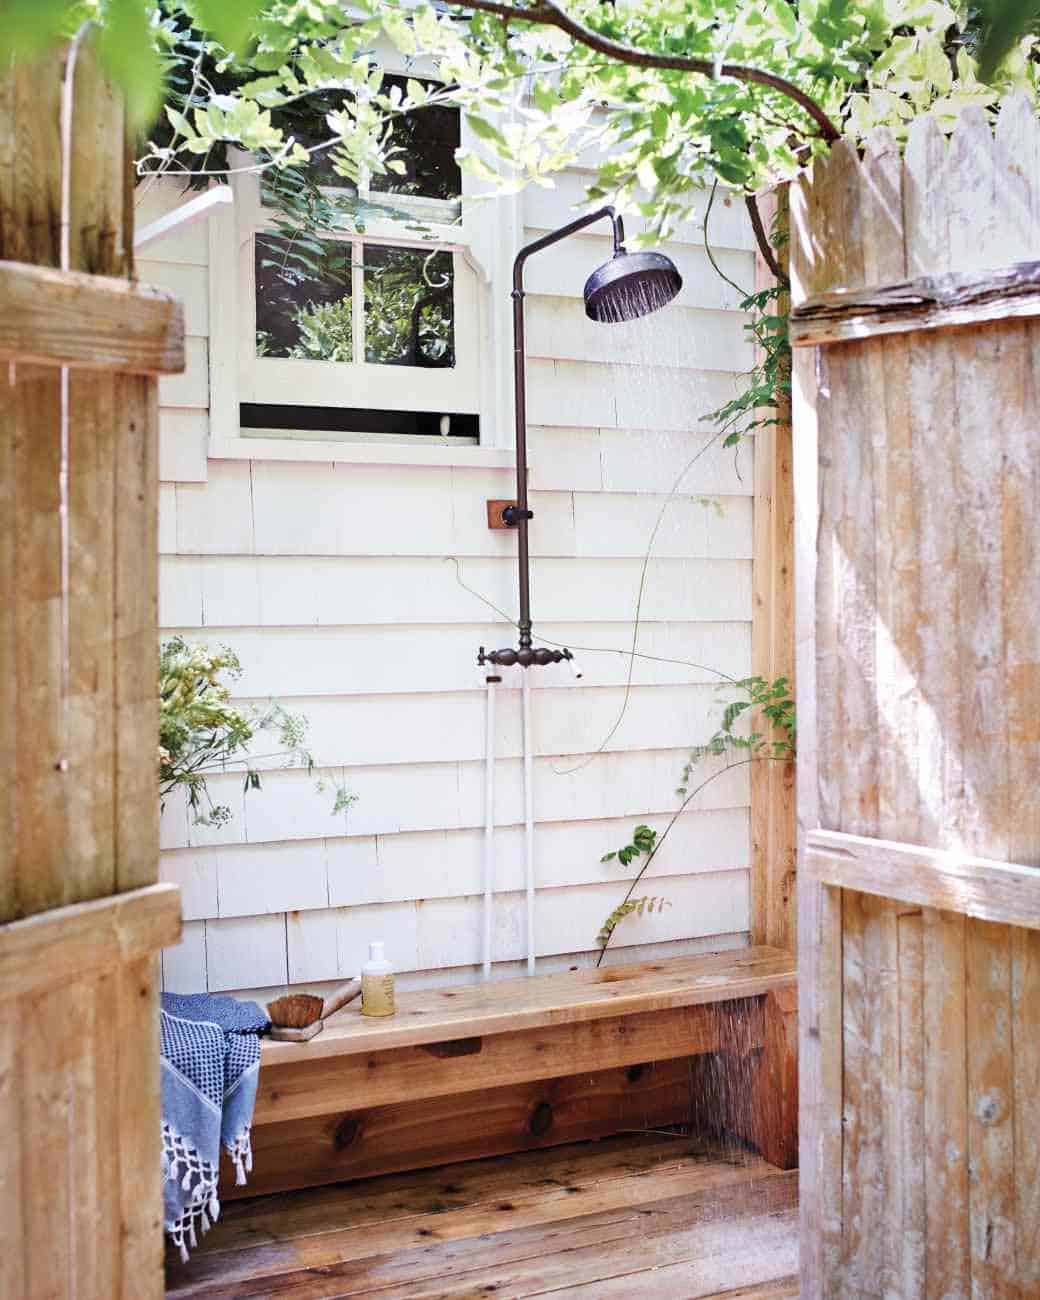 Creatice Outdoor Bathroom Designs with Simple Decor